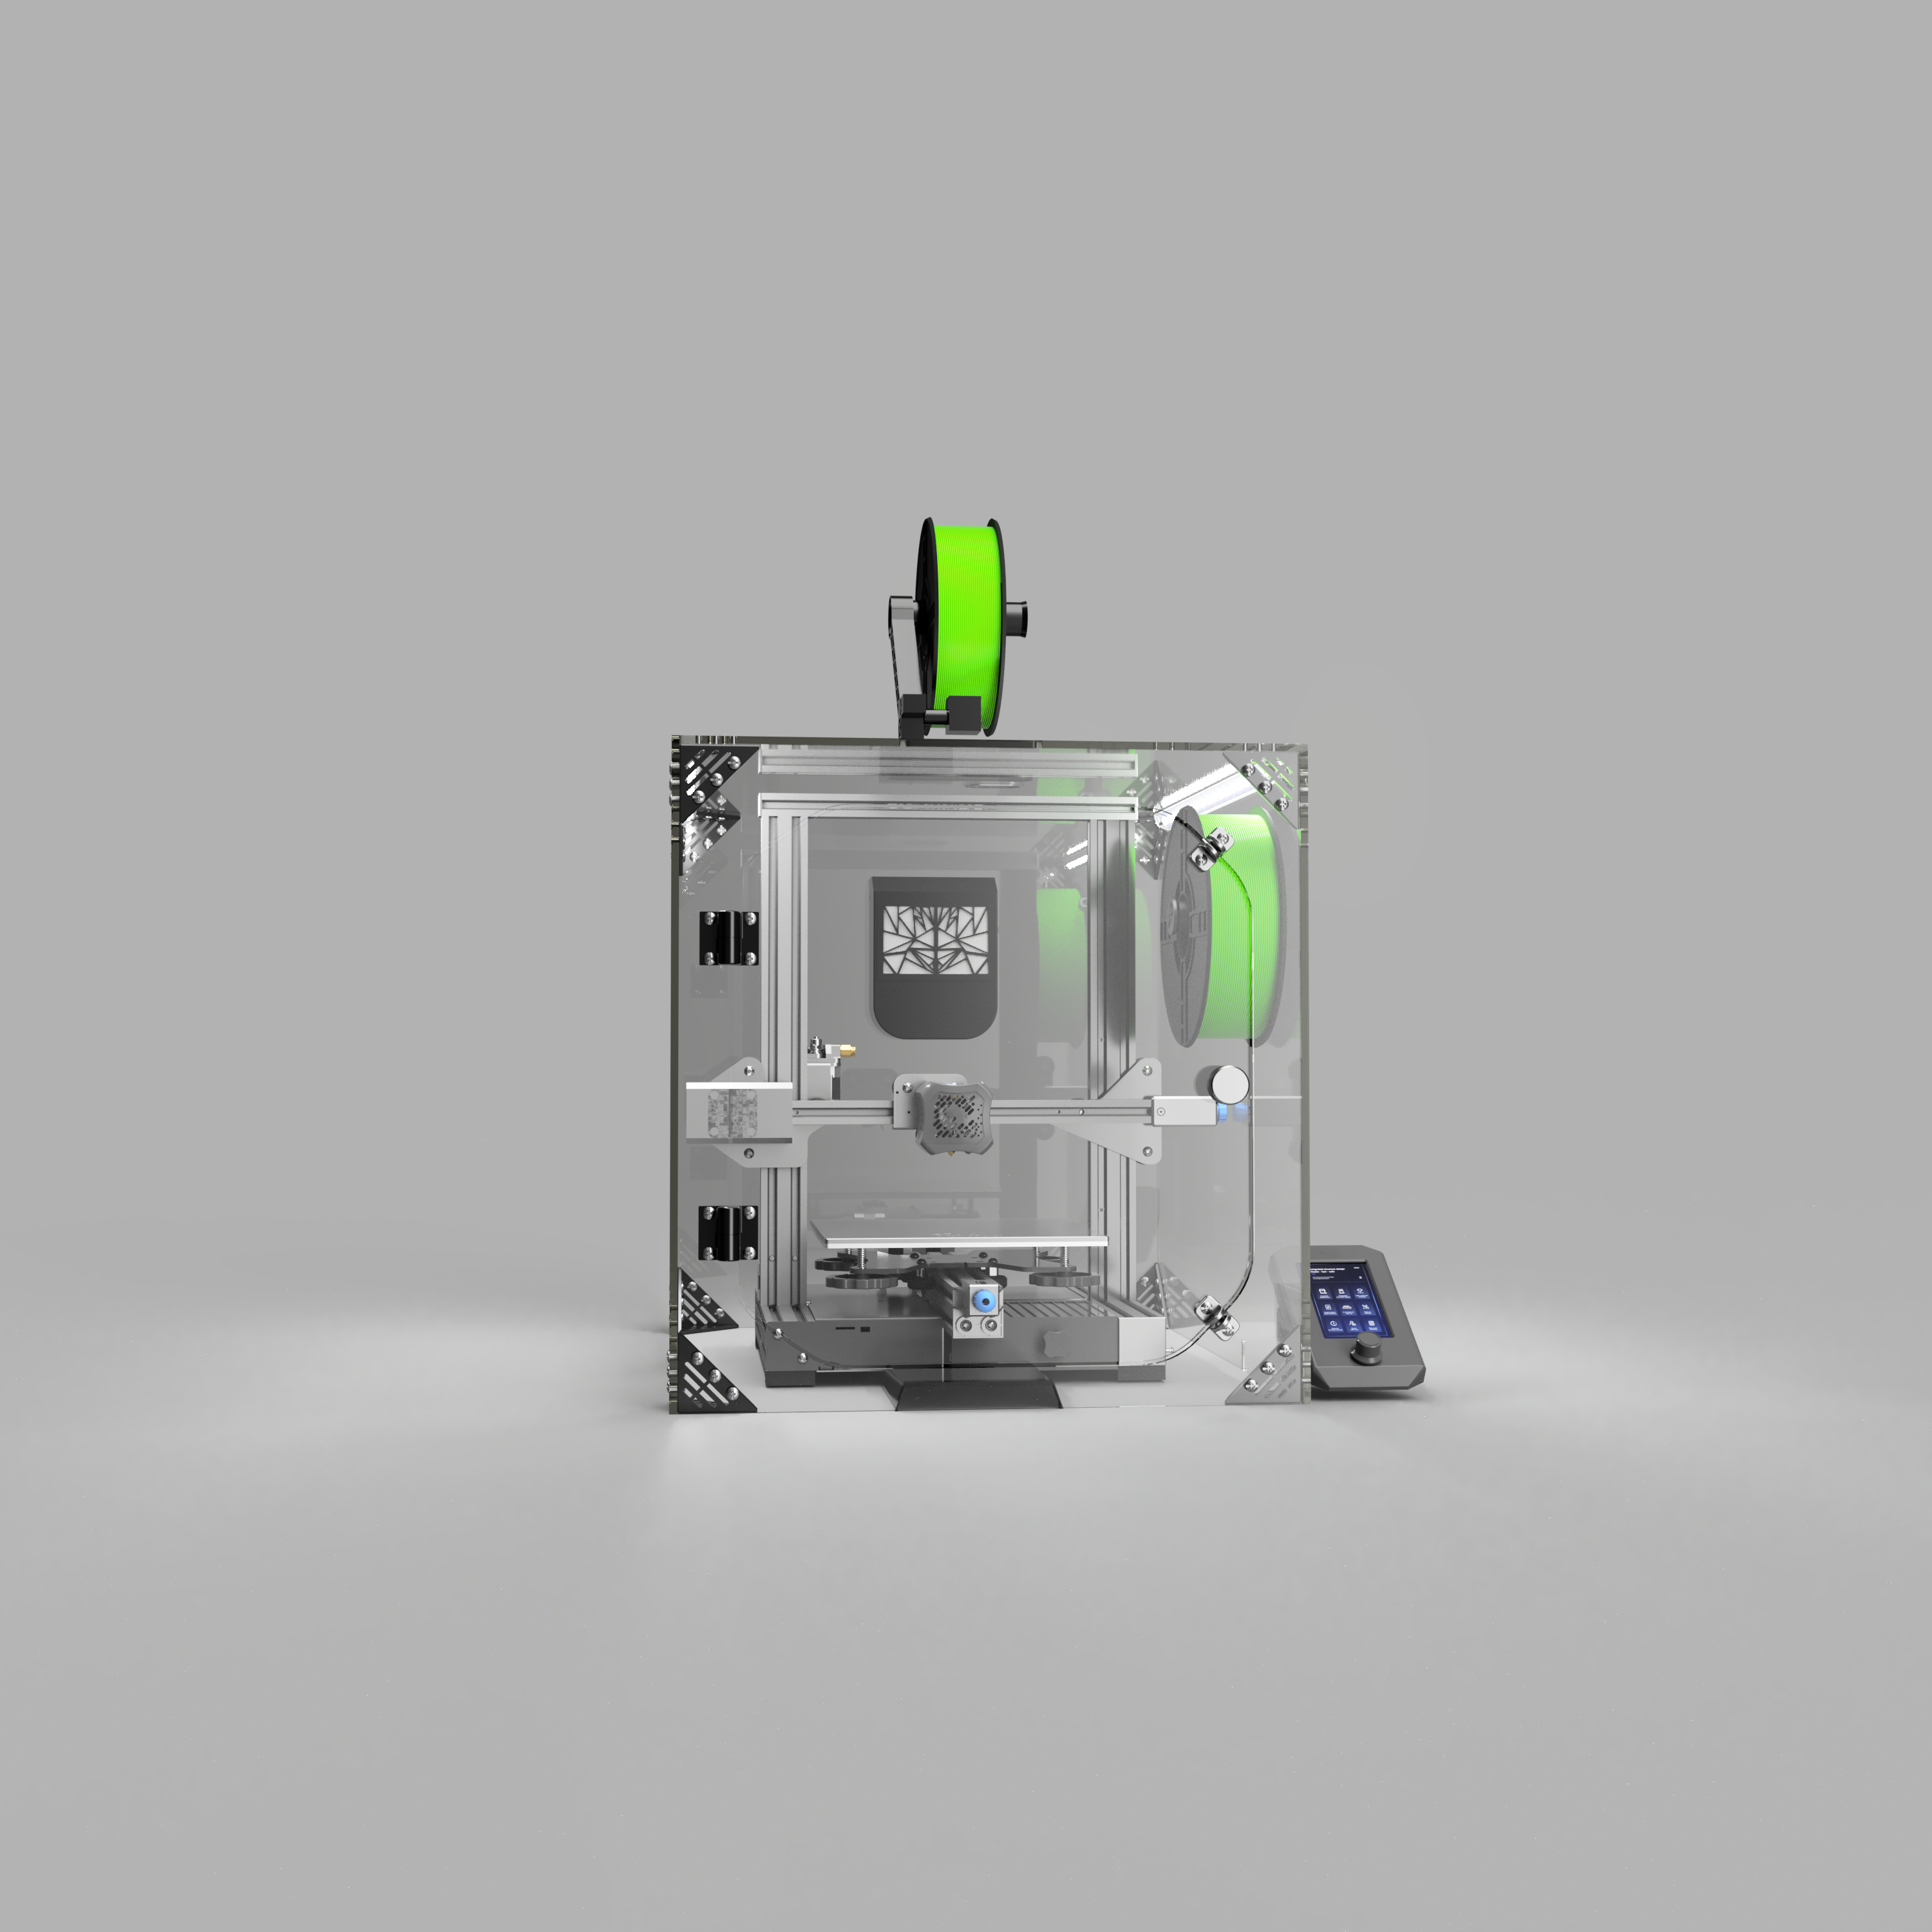 Official Creality Ender 3 V3 SE 3D Printer, Upgraded Ender 3